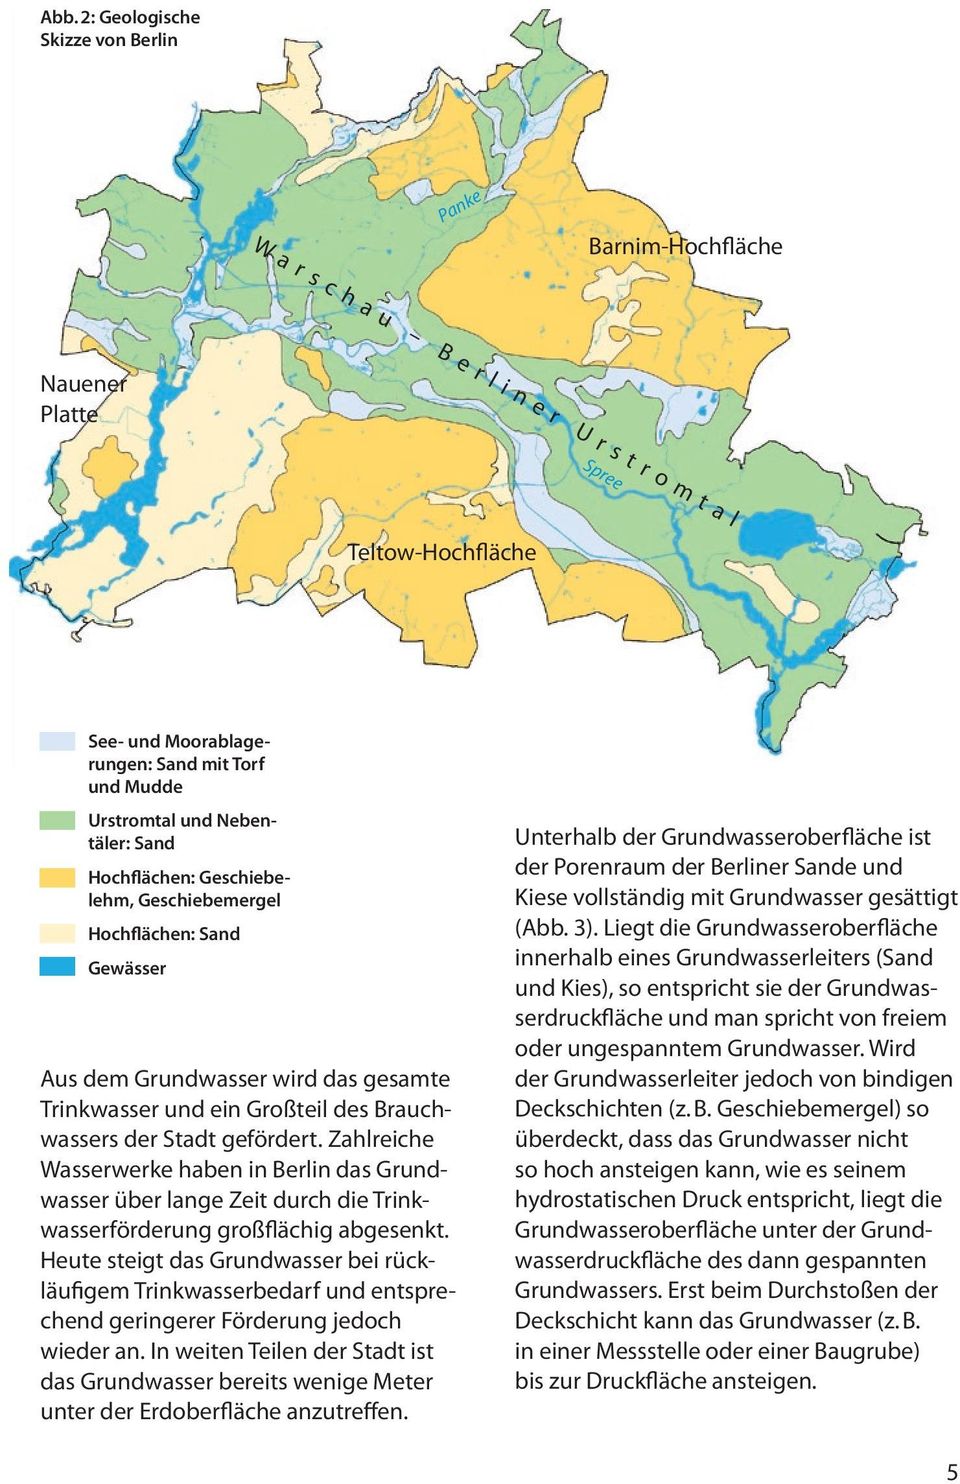 Zahlreiche Wasserwerke haben in Berlin das Grundwasser über lange Zeit durch die Trinkwasserförderung großflächig abgesenkt.